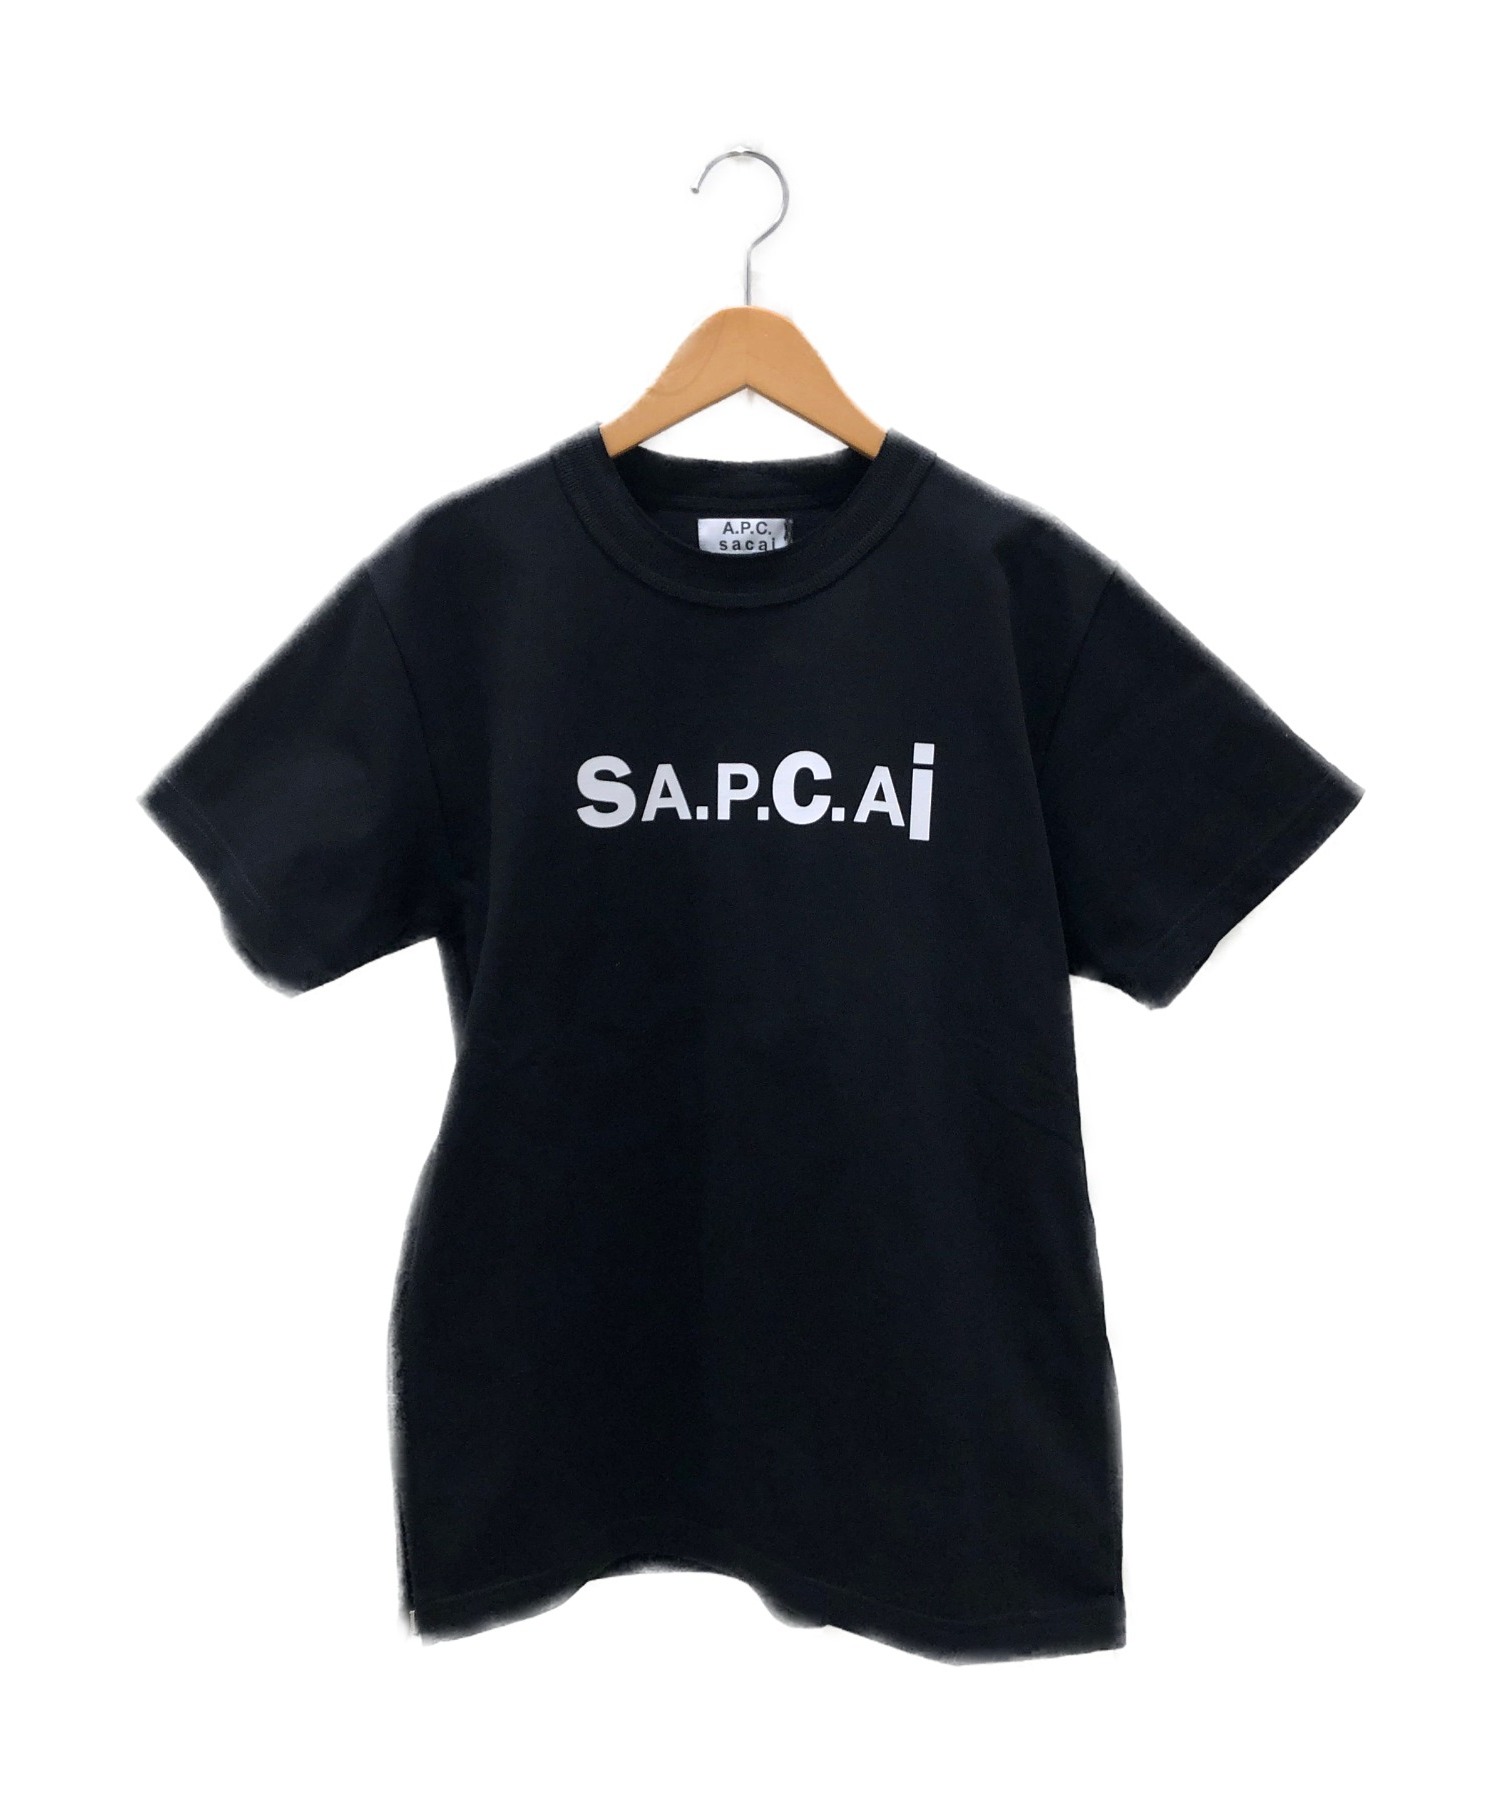 グレー新品A.P.C. × Sacai コラボロゴTシャツ